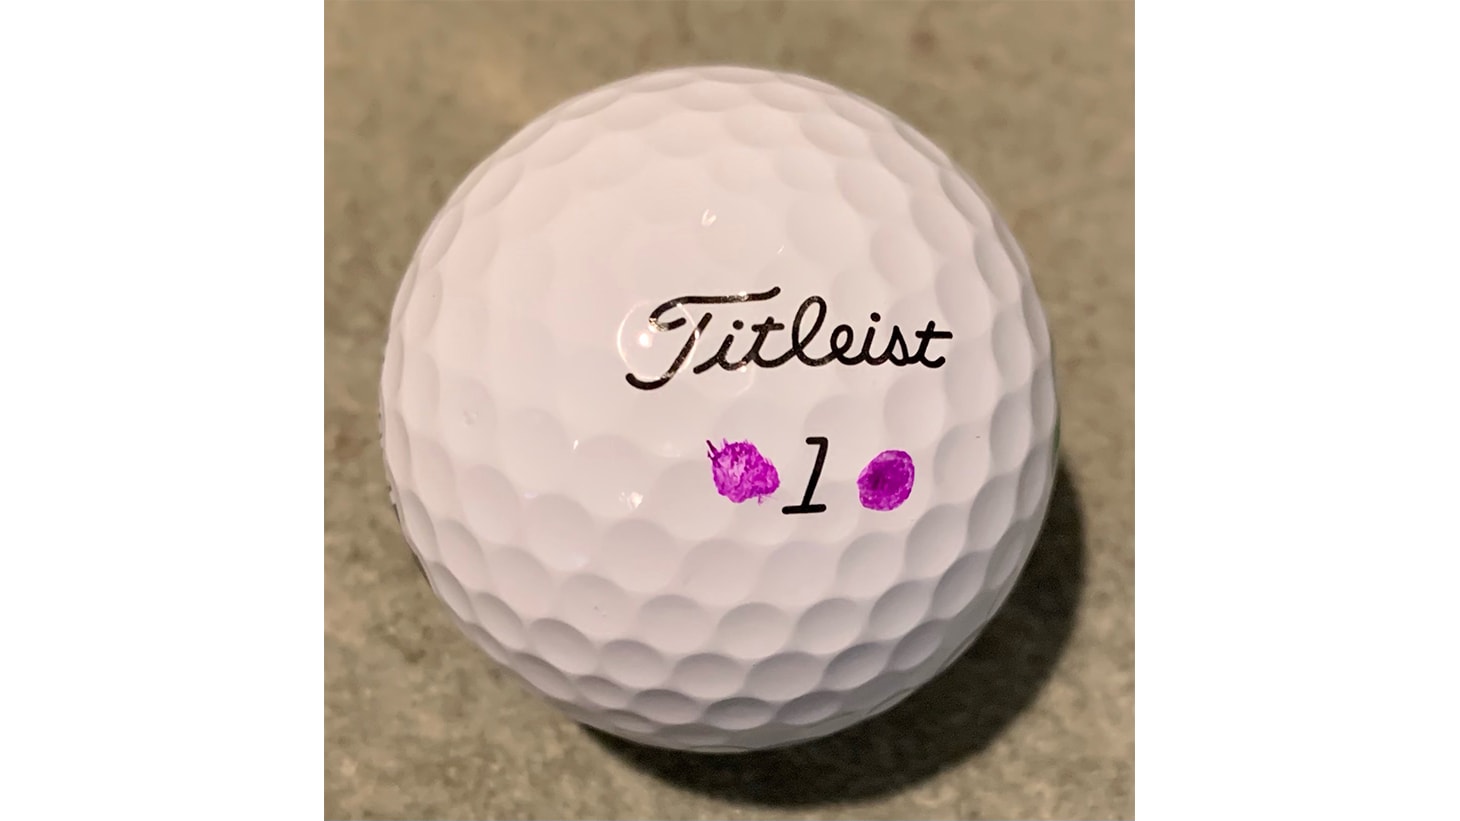 Pro V1 golf ball